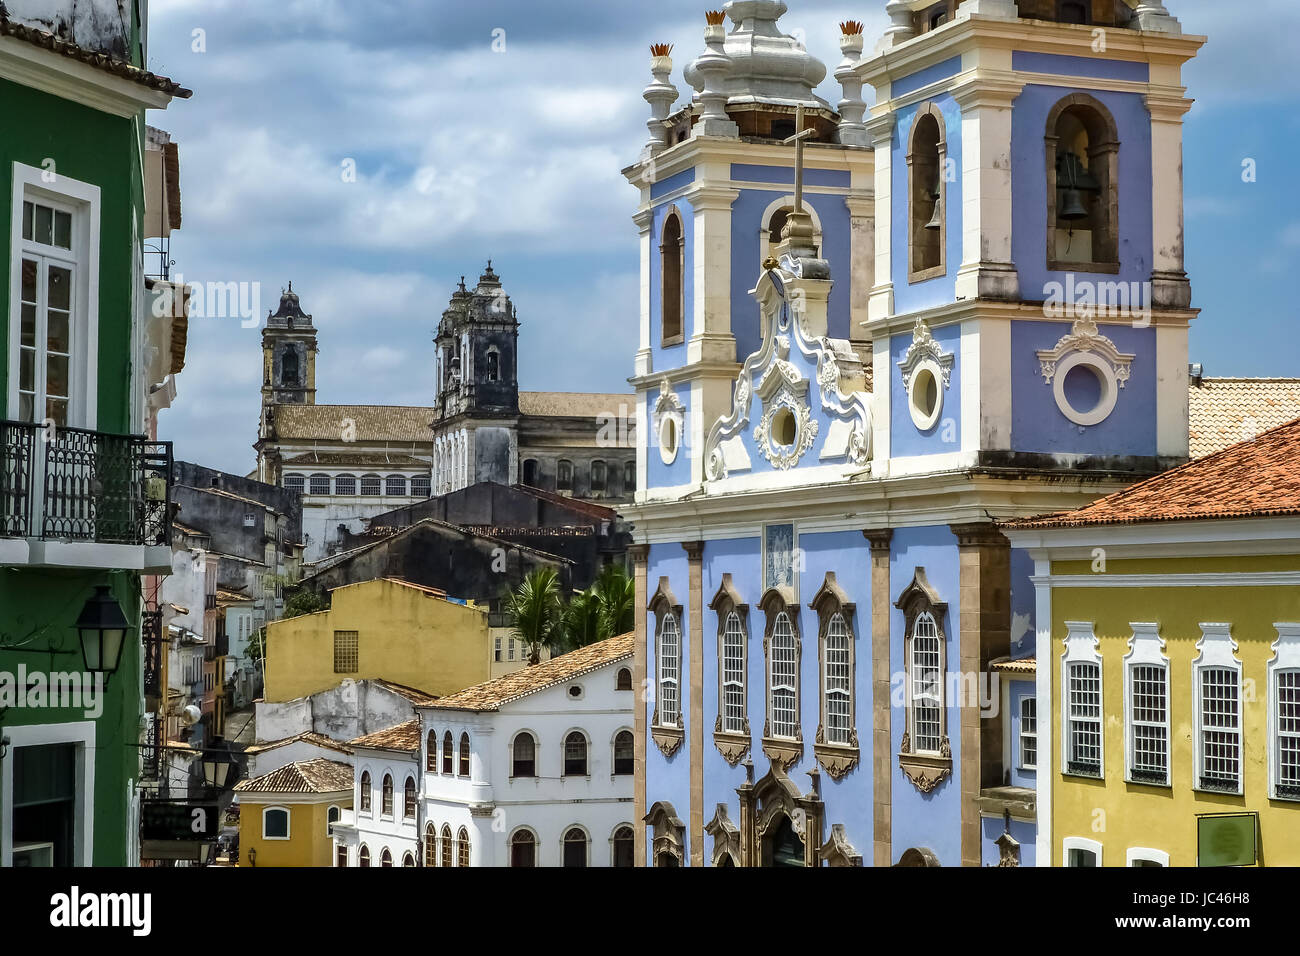 Blick vom Largo Pelourinho, koloniale Architektur - Kirchen und Gebäuden unter strahlend blauem Himmel, Salvador da Bahia Stockfoto